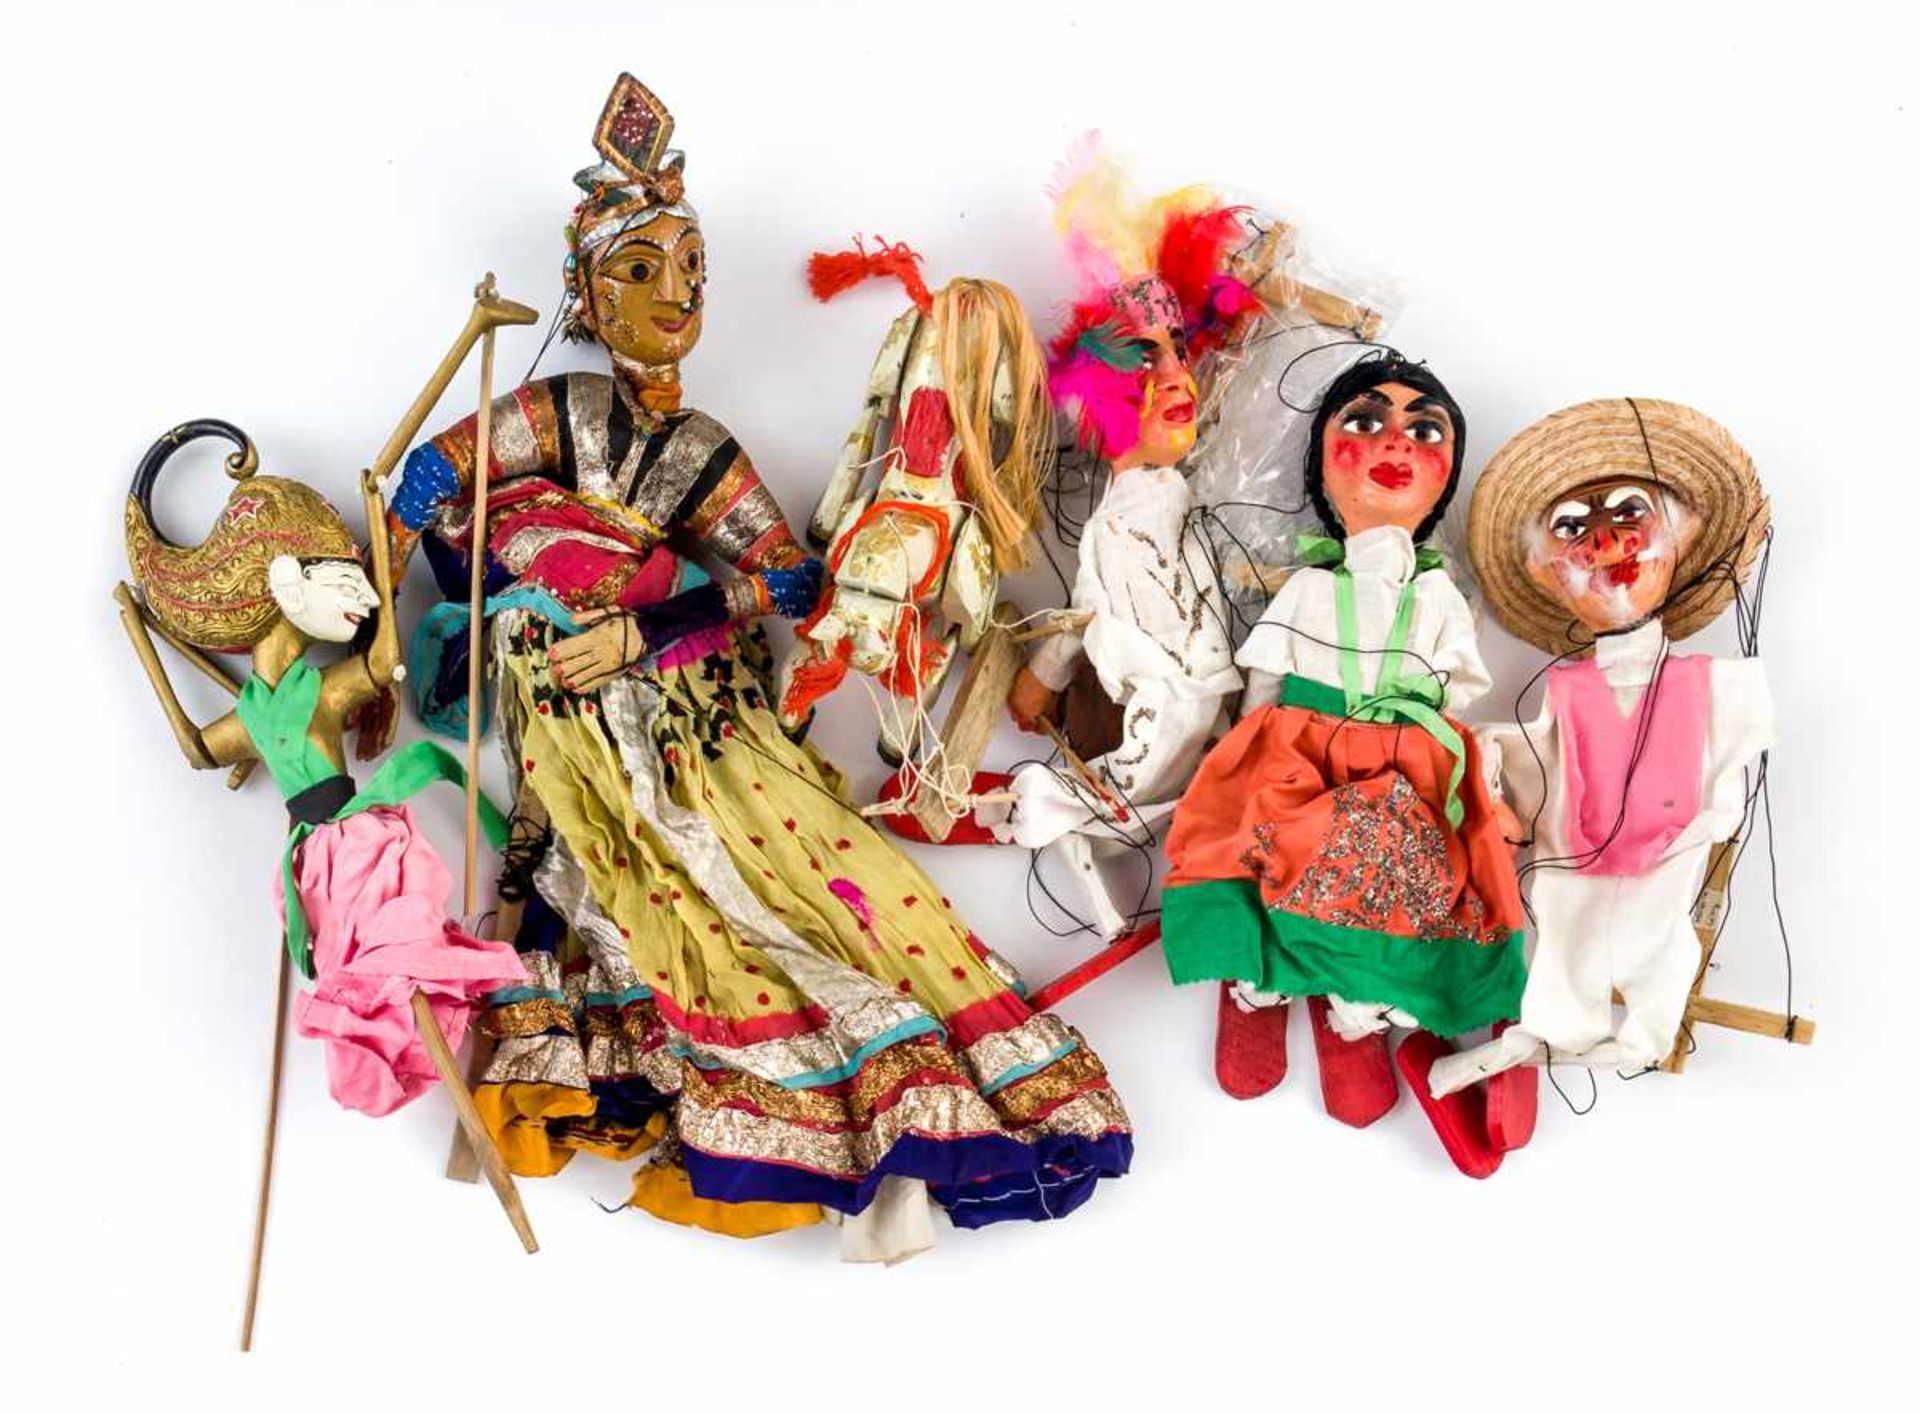 Figuren aus Puppentheater Holz / Stoffe, 20. Jh. Größte Figur: 56 x 20 cm, Figur links: 41 x 12cm,